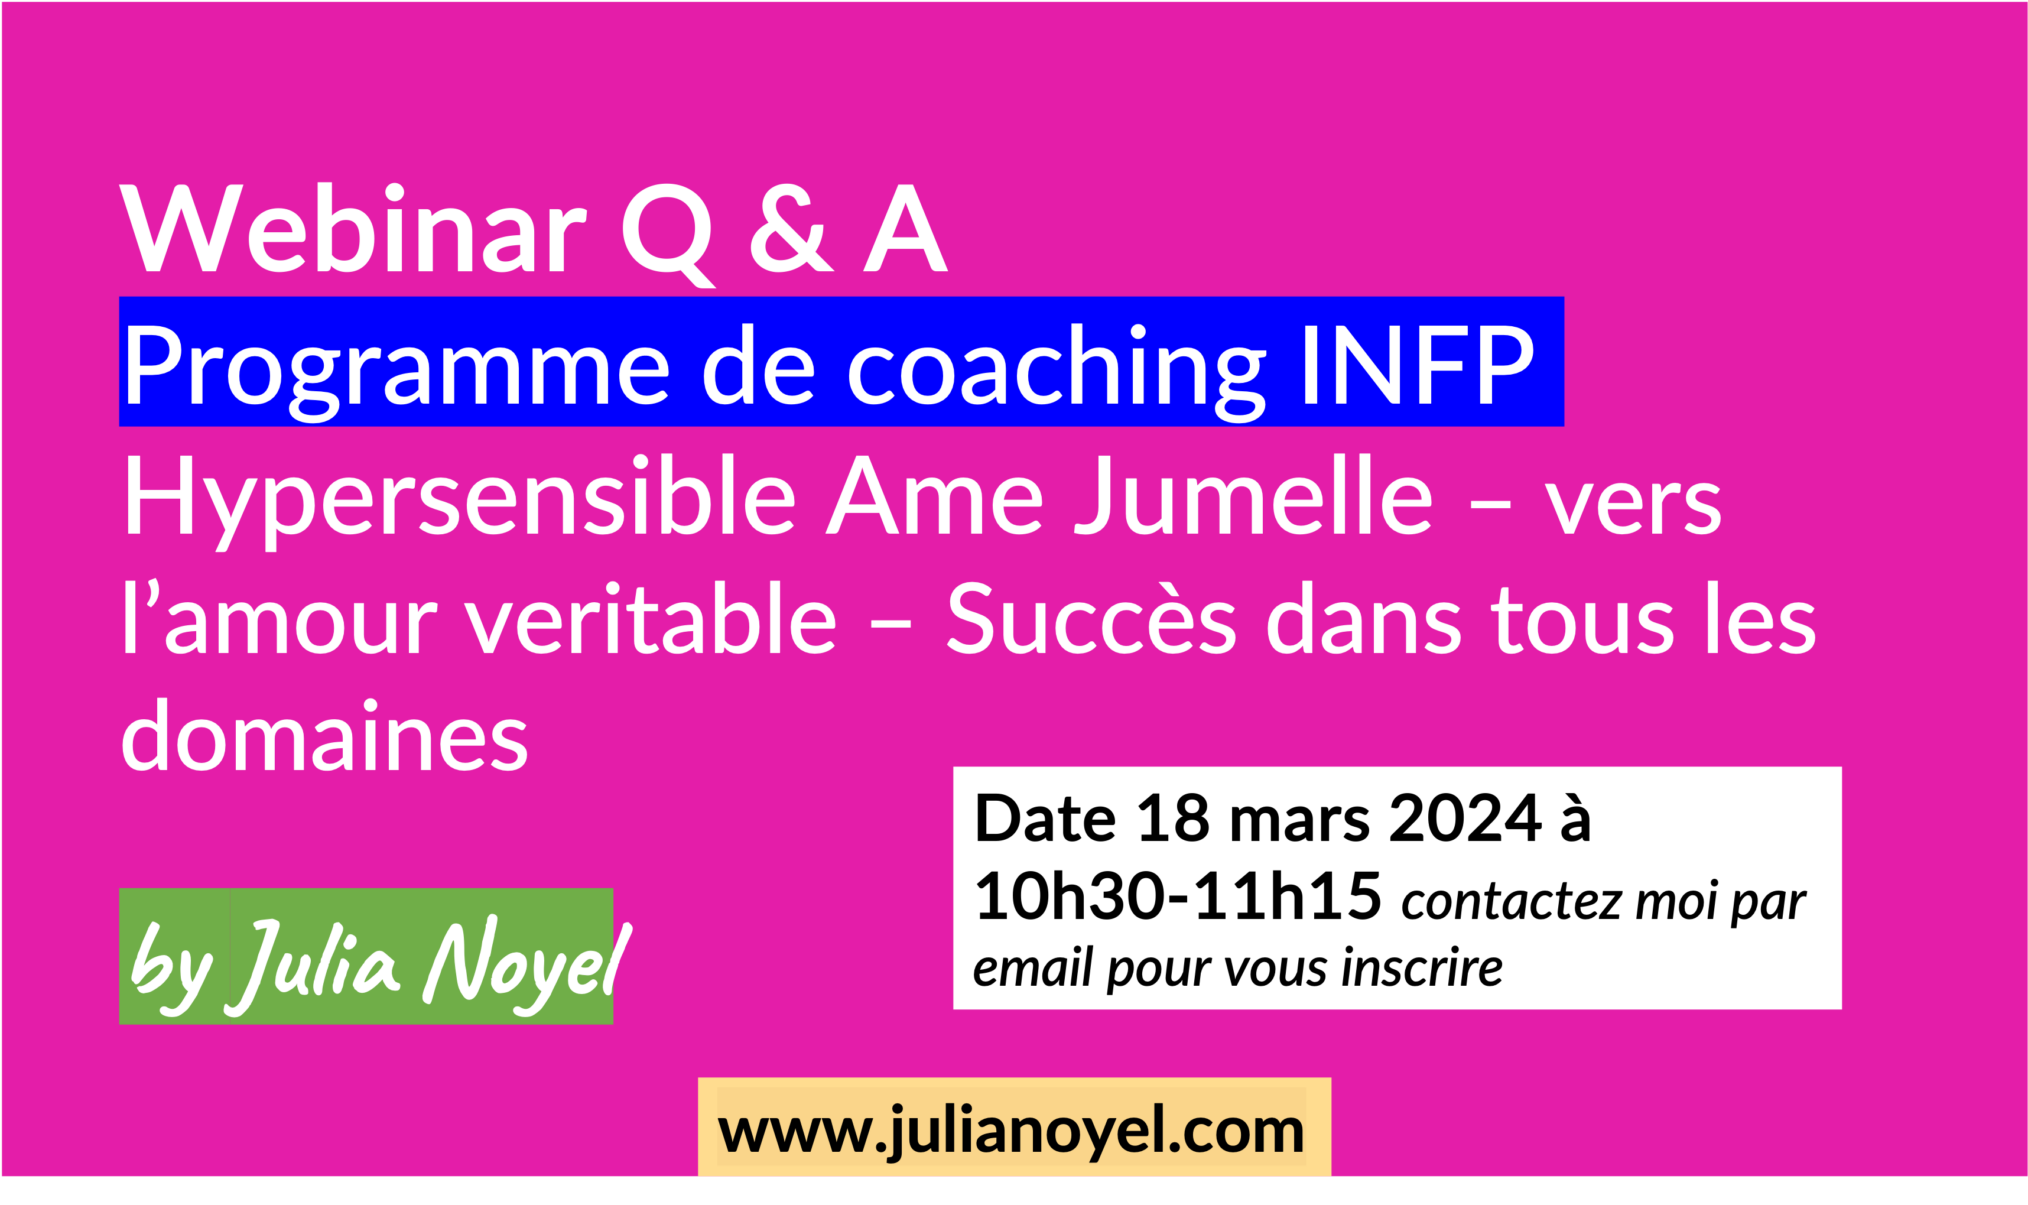 Webinar Q & A Programme de coaching INFP Hypersensible Ame Jumelle – vers l’amour veritable – Succès dans tous les domaines by Julia Noyel